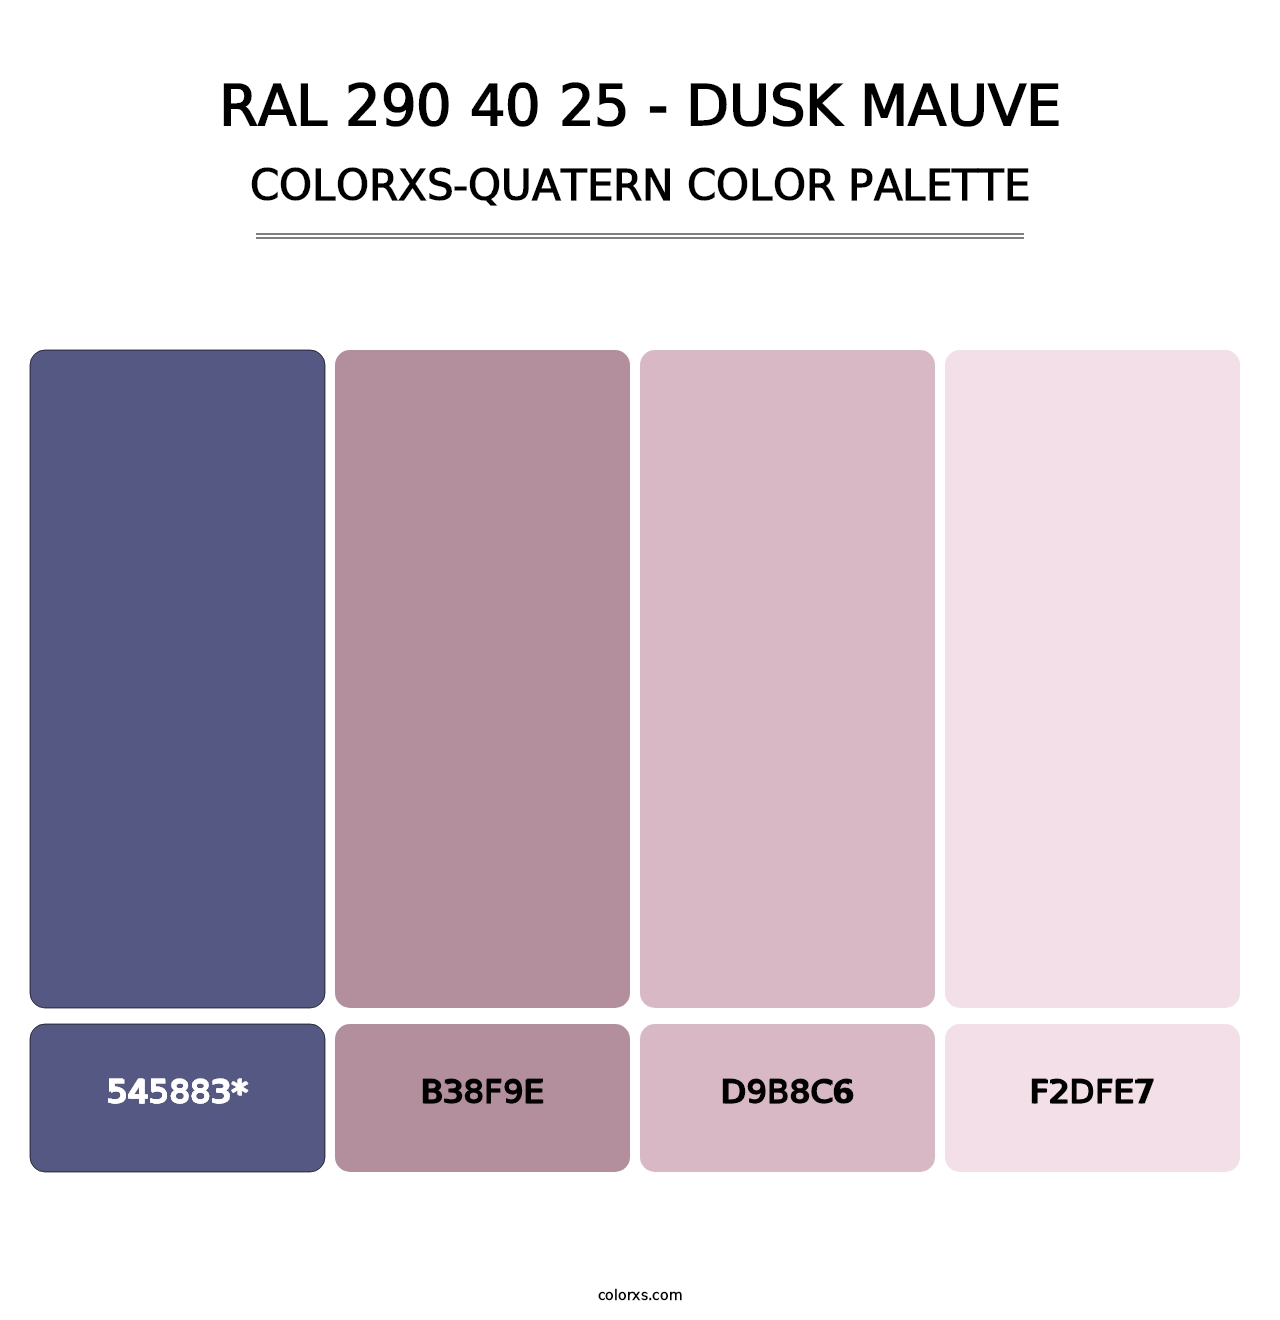 RAL 290 40 25 - Dusk Mauve - Colorxs Quatern Palette